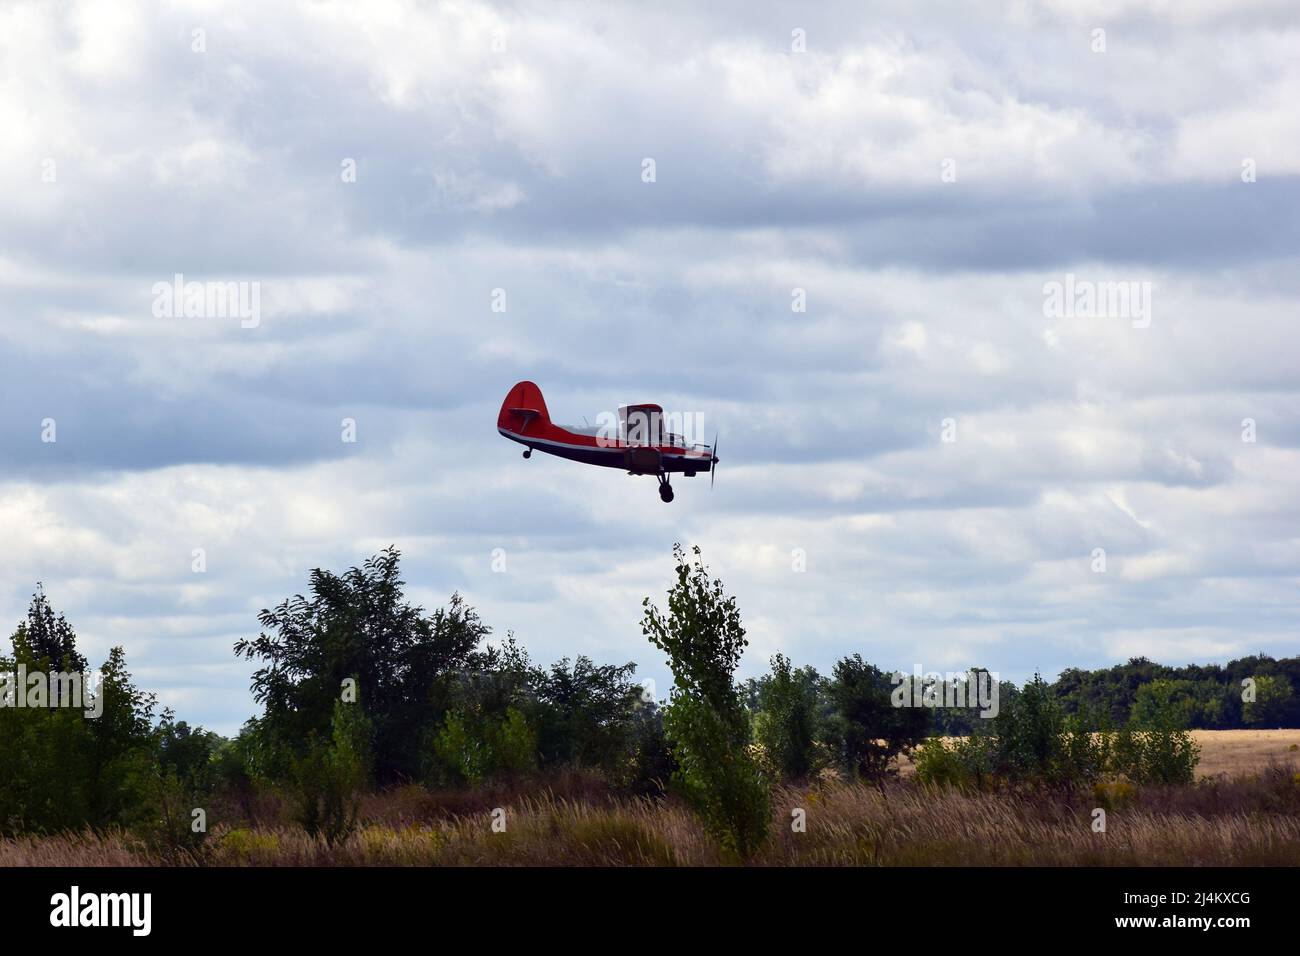 Un ancien avion biplan avec hélice descend pour atterrir dans un ciel bleu nuageux Banque D'Images